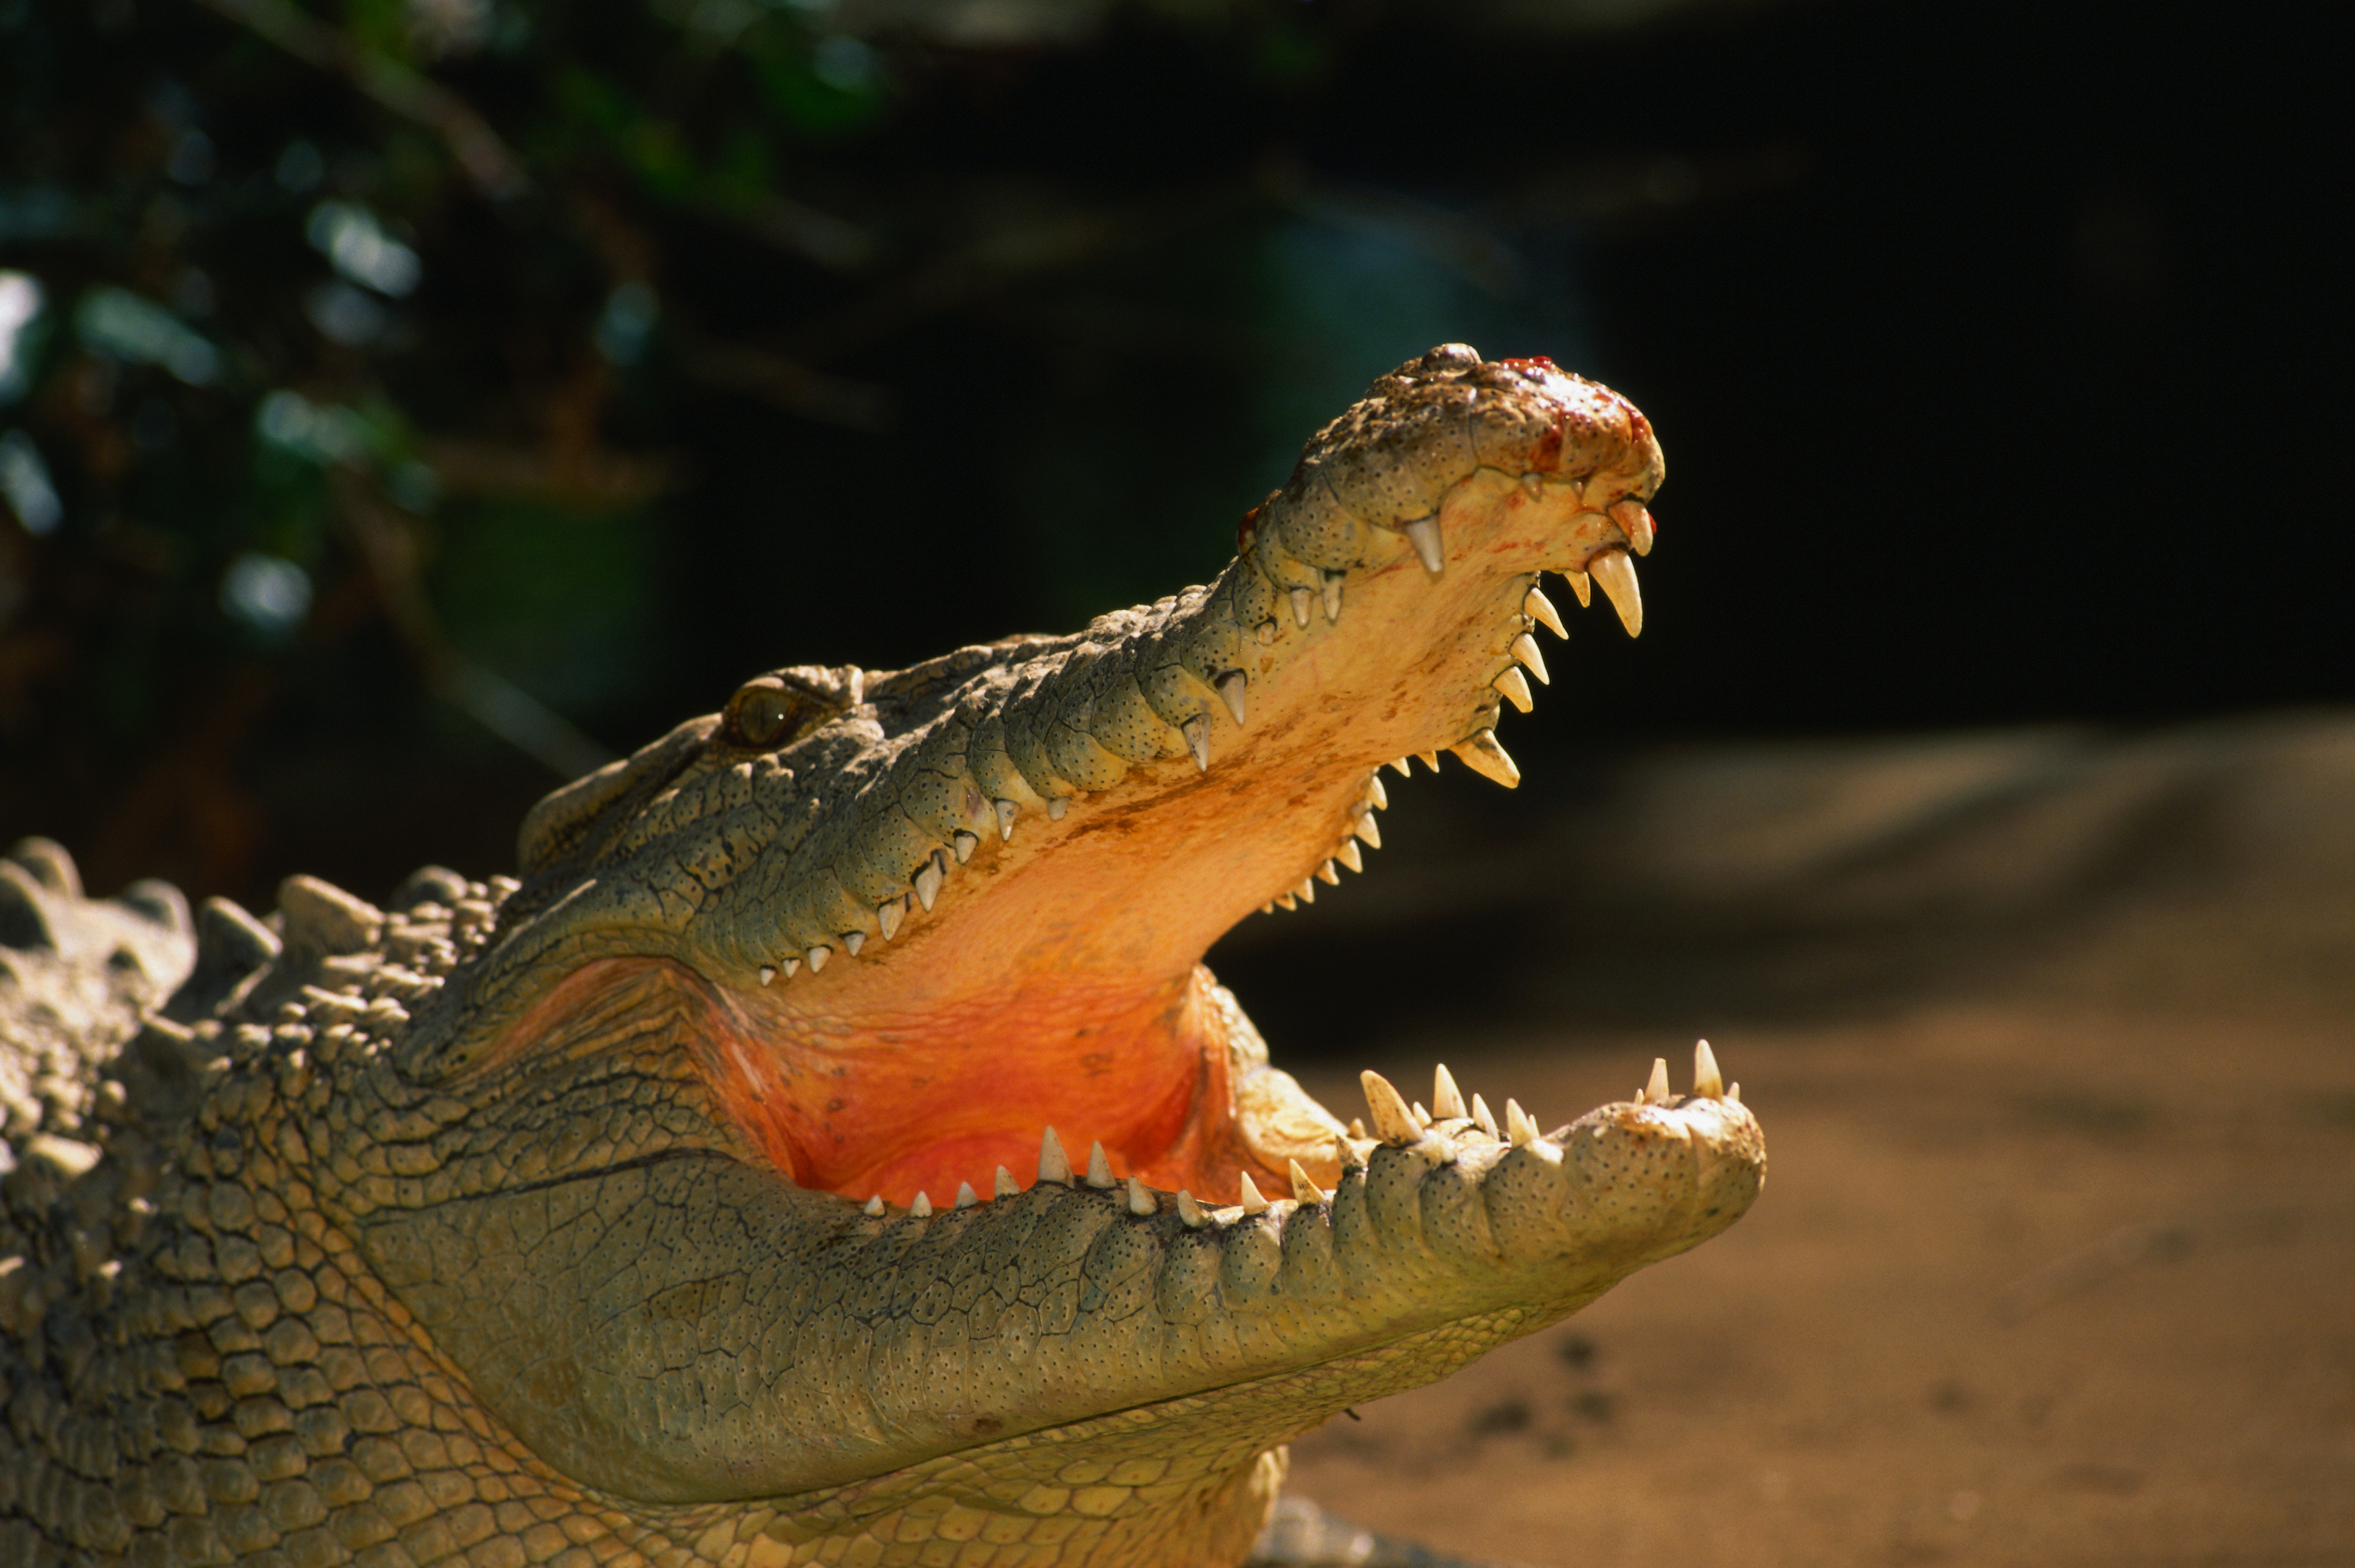 Крокодил с открытой пастью